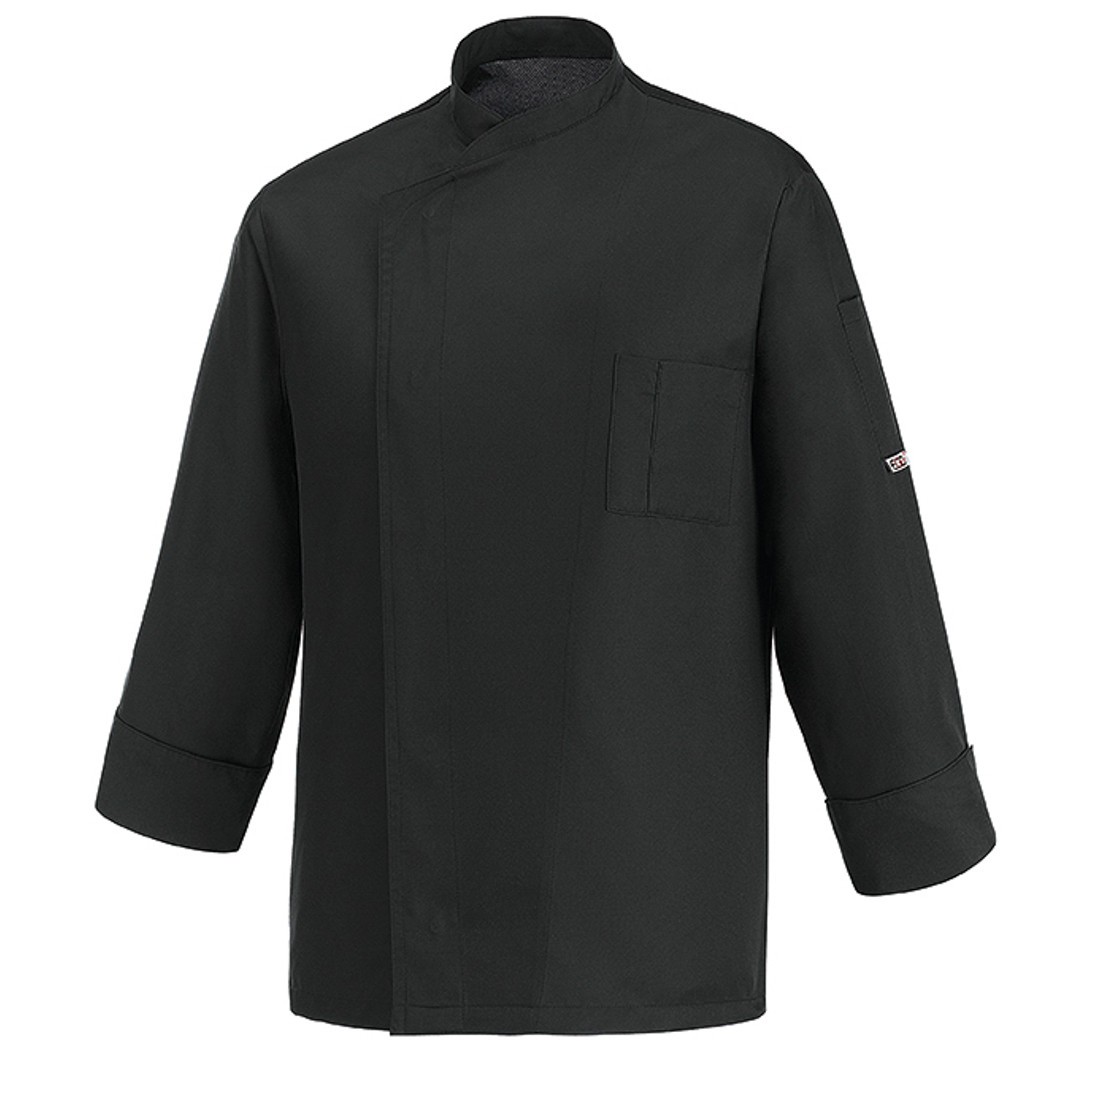 Ottavio Chef's Kacket, LS/100% microfiber - Safetywear